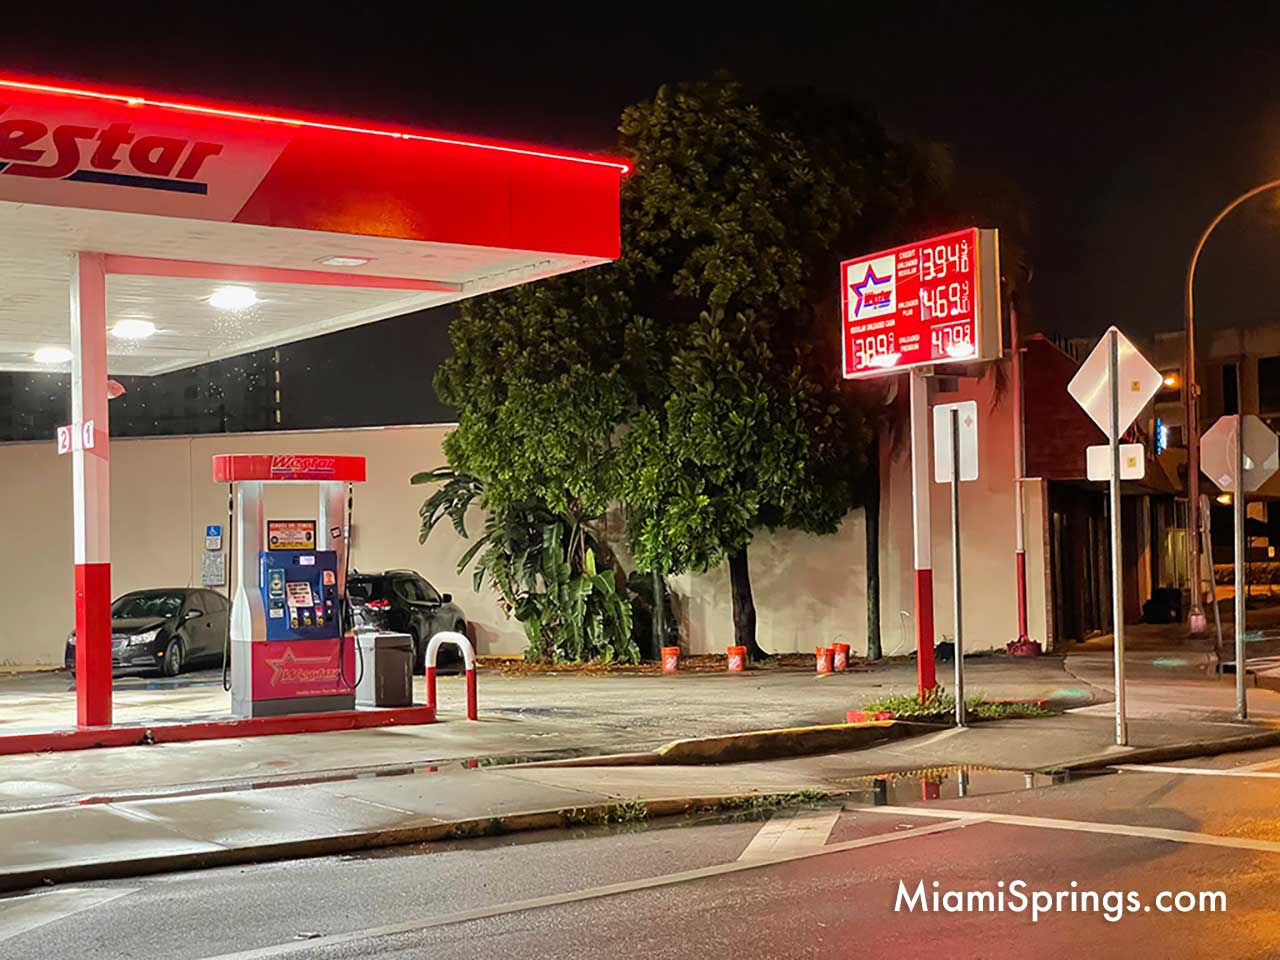 Westar Miami Springs Gas below $4 / gallon